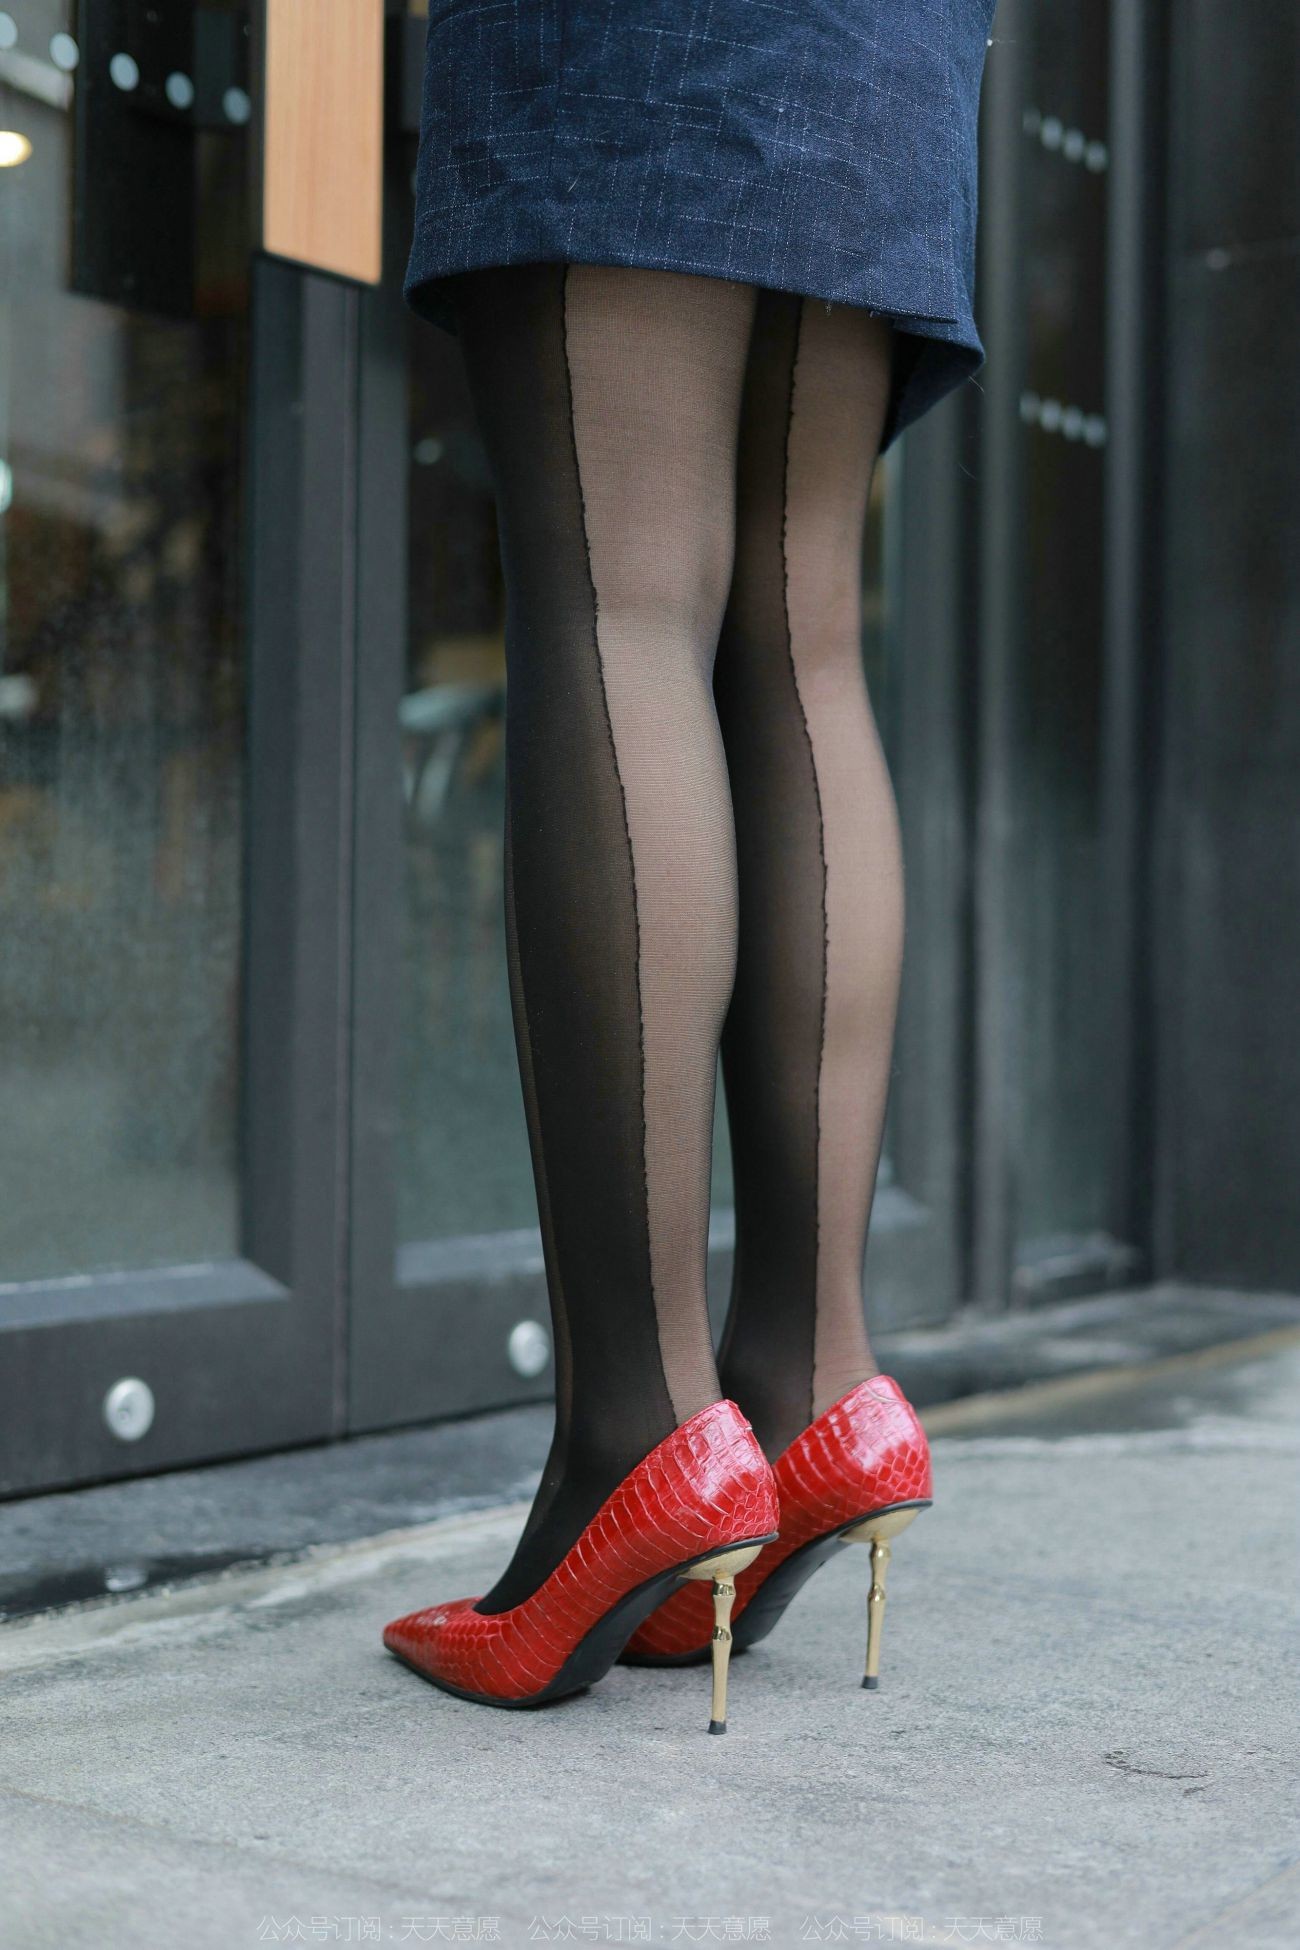 IESS异思趣向腿模丝袜美足写真红鞋职业装 (3)